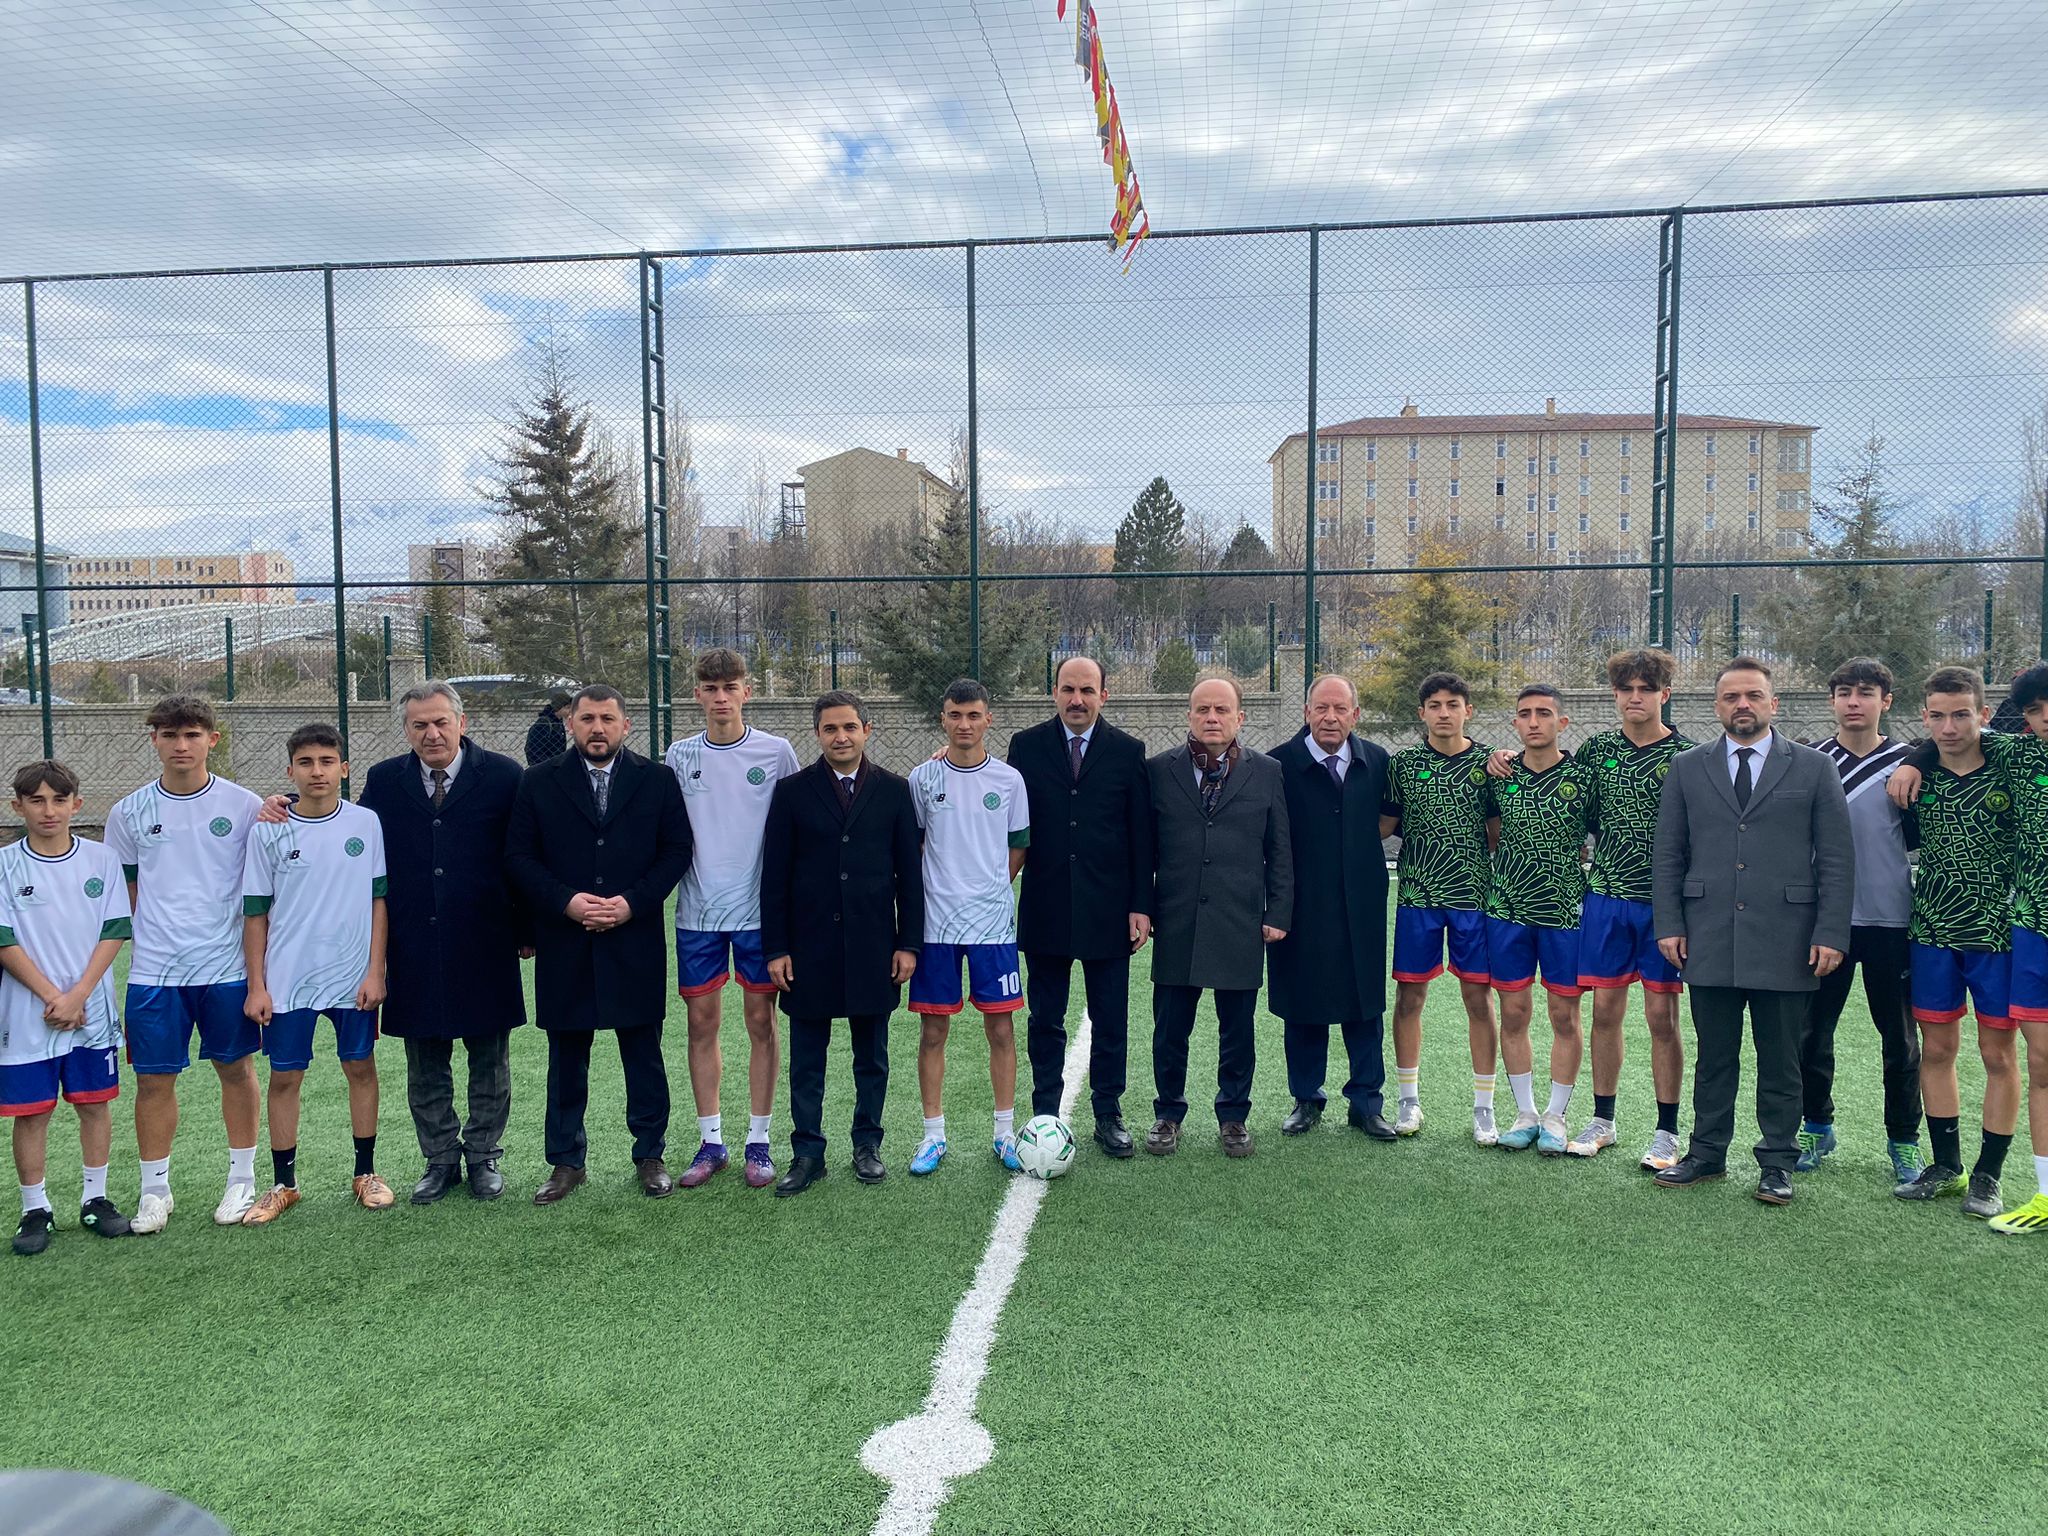 Halı saha açılış törenine katılan Konya Büyükşehir Belediye Başkanı Uğur İbrahim Altay ve Ereğli Belediye Başkanı Hüseyin Oprokçu öğrencilerin maçını da birlikte izlediler.